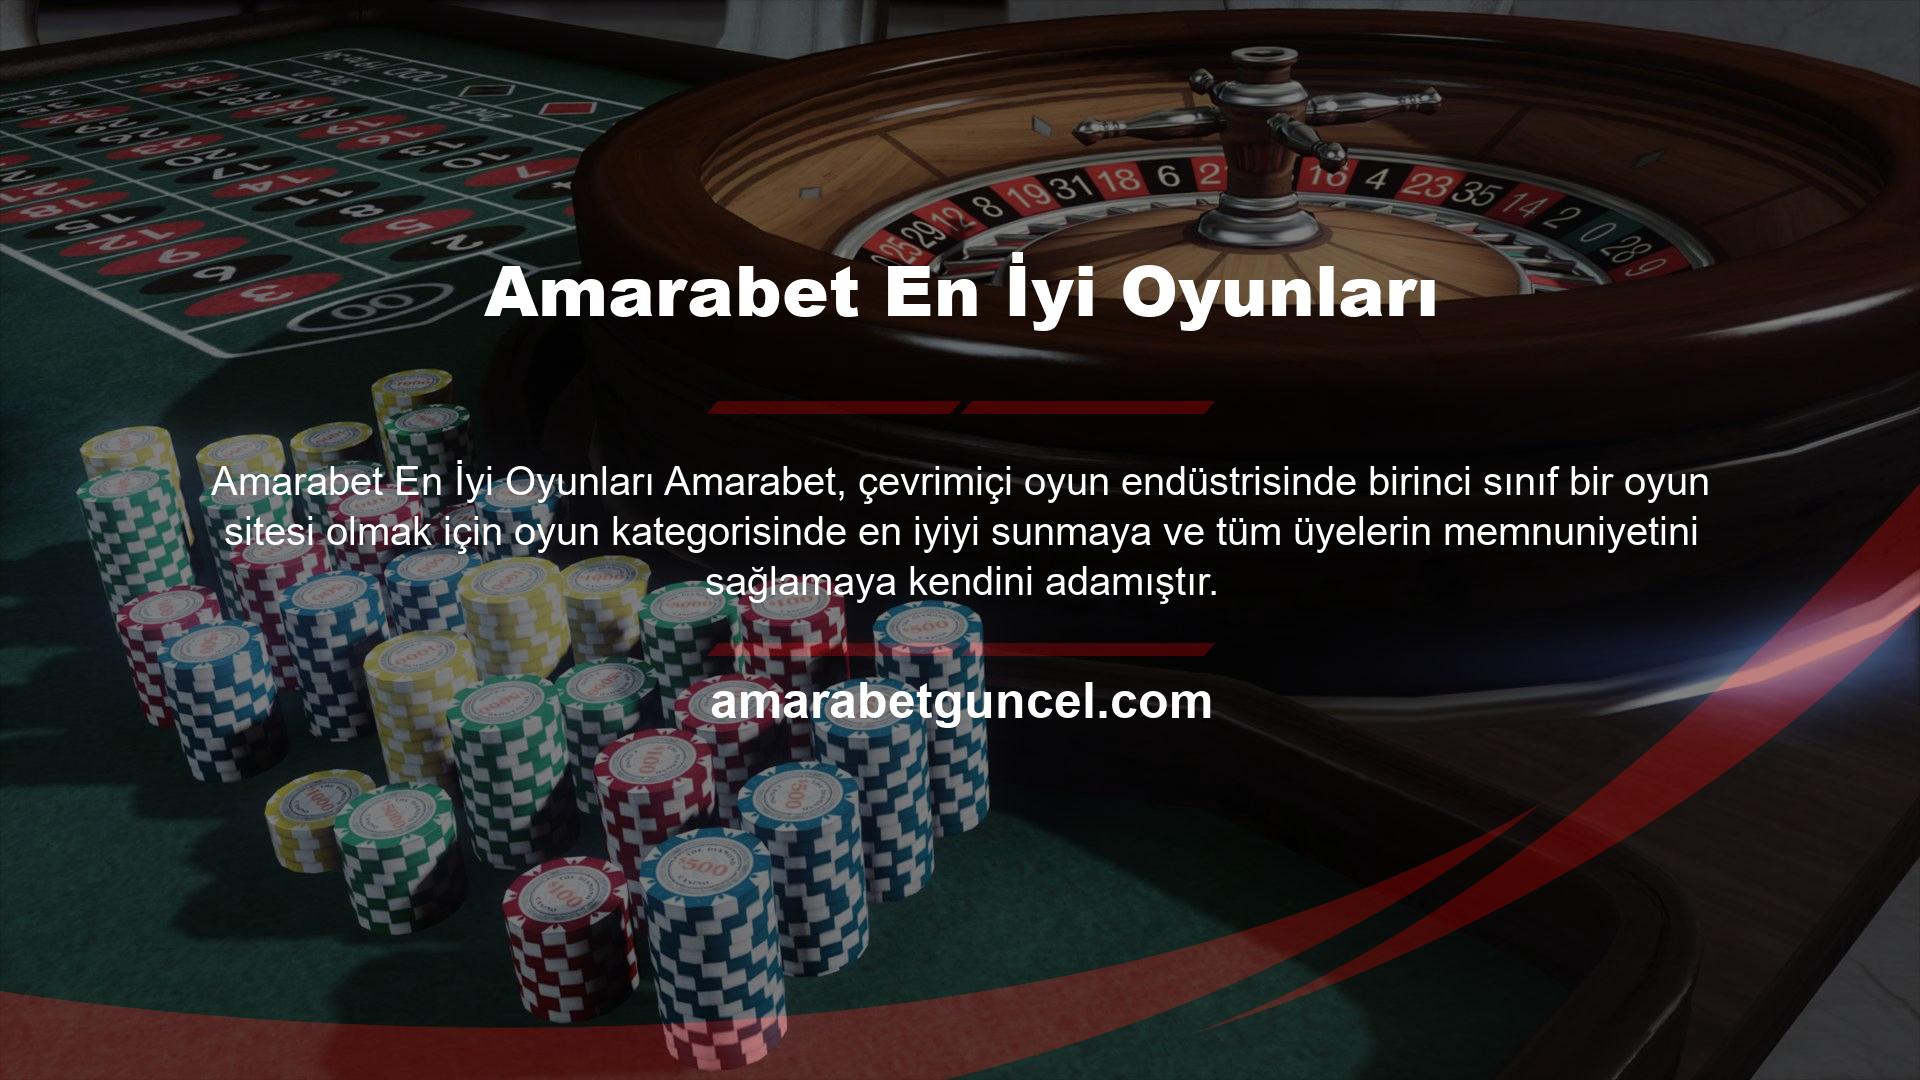 Amarabet canlı bahis alternatifi Türk kullanıcılar arasında en popüler oyun türüdür